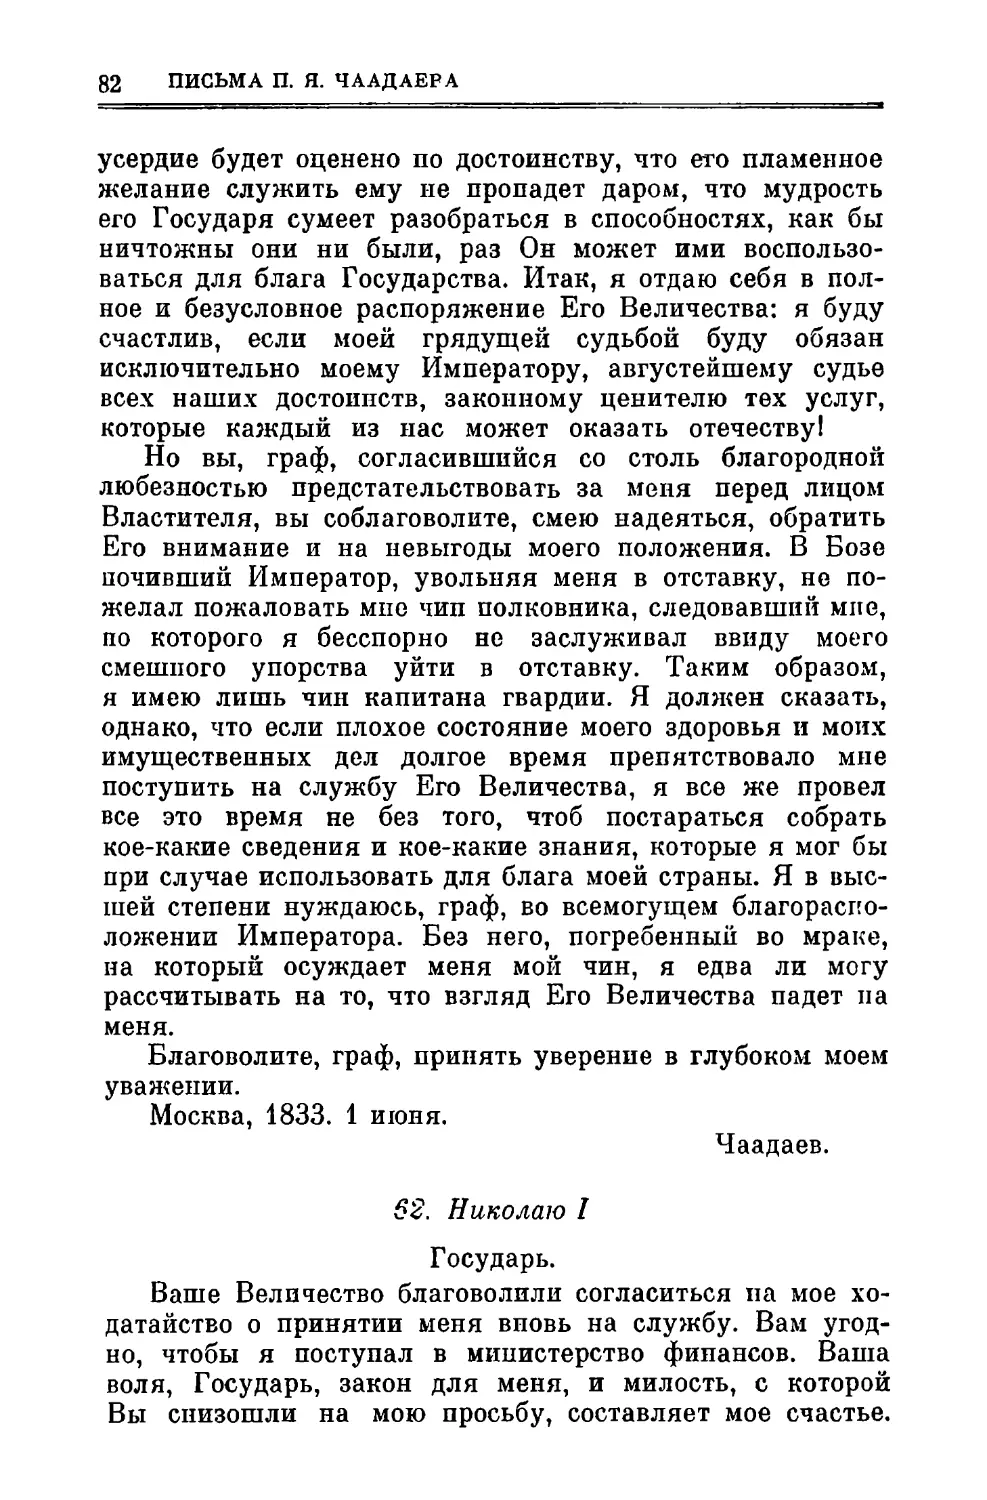 62. Николаю I 15.VII